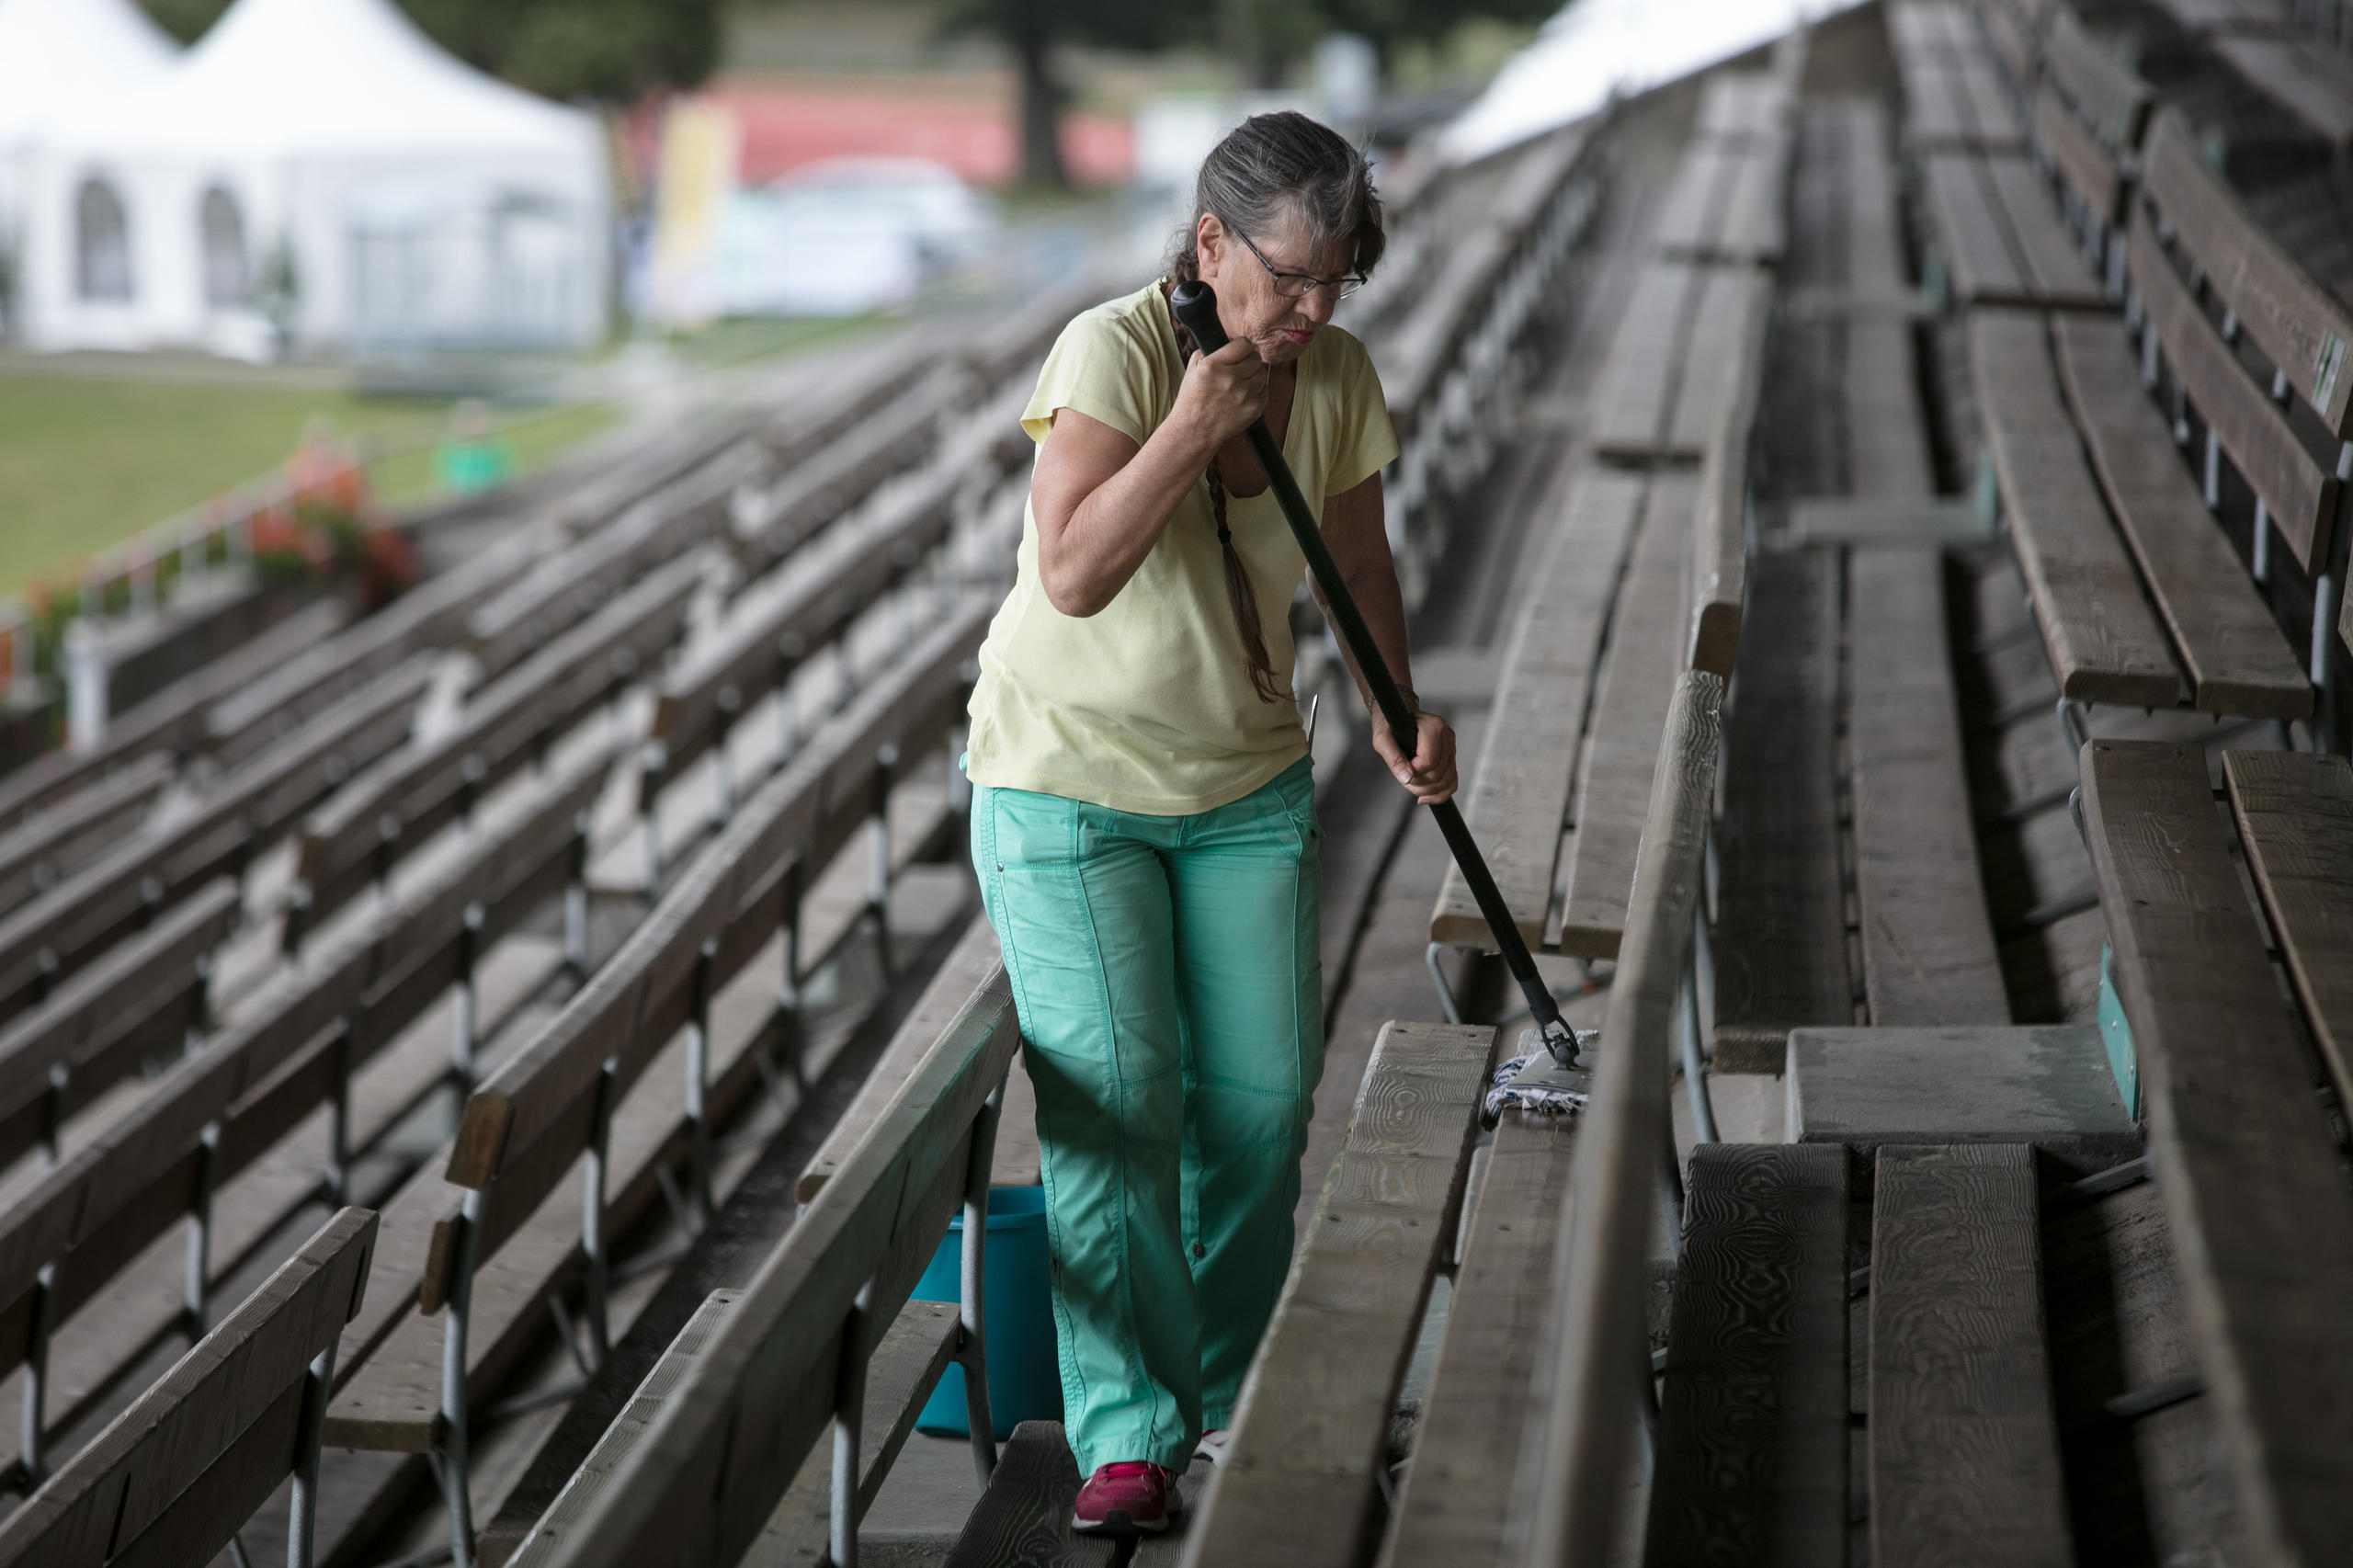 Antes de la carrera,una mujer limpia las gradas.